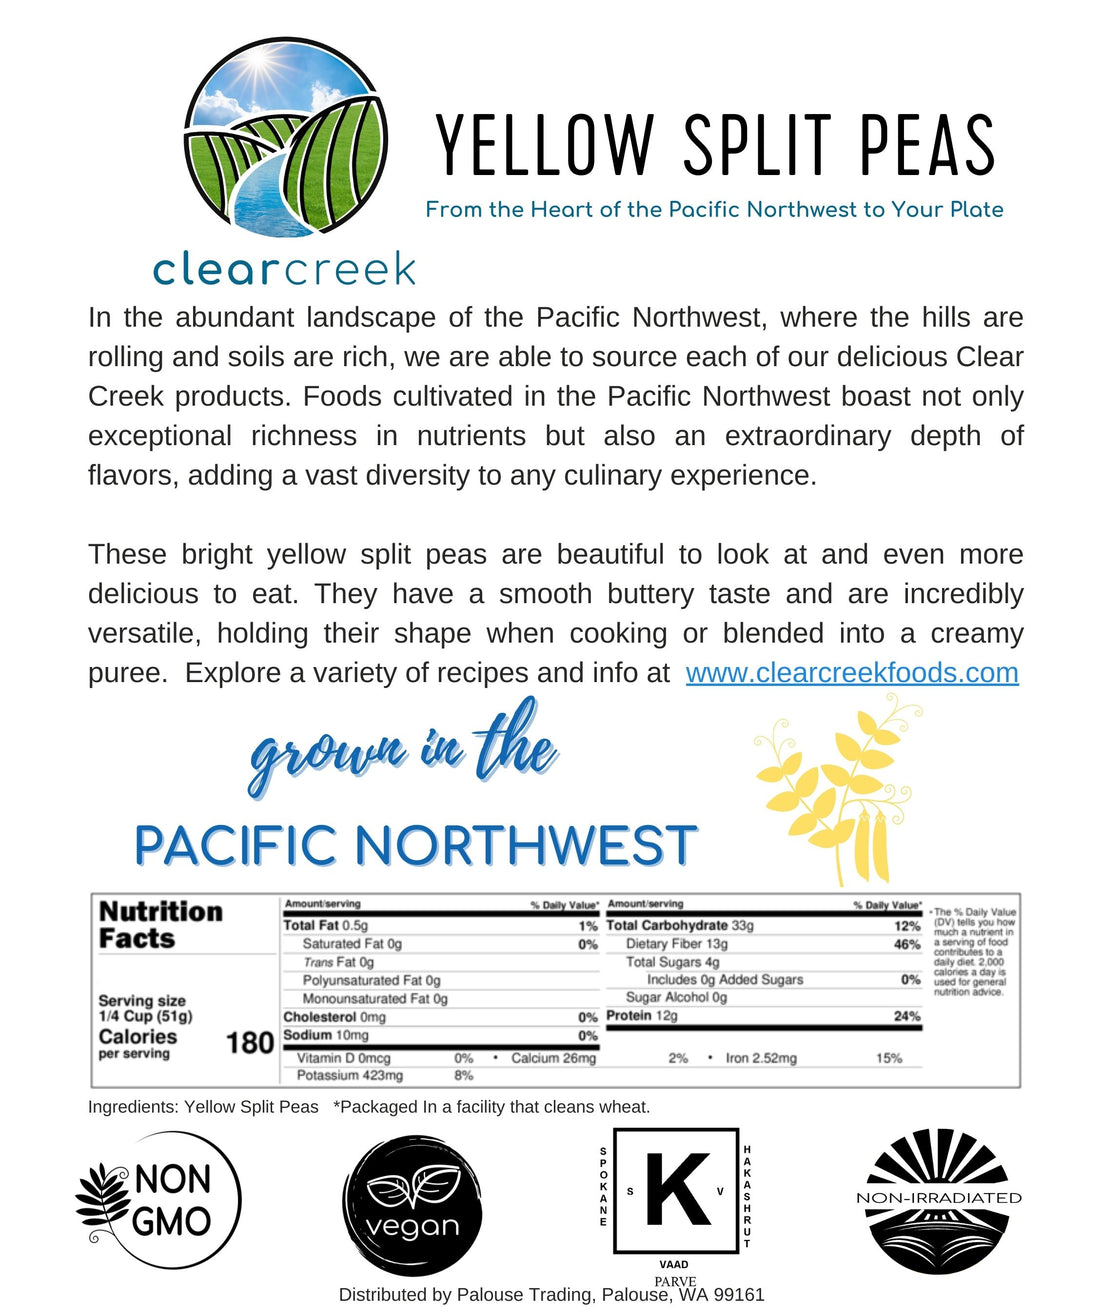 Yellow Split Peas | 25 LB